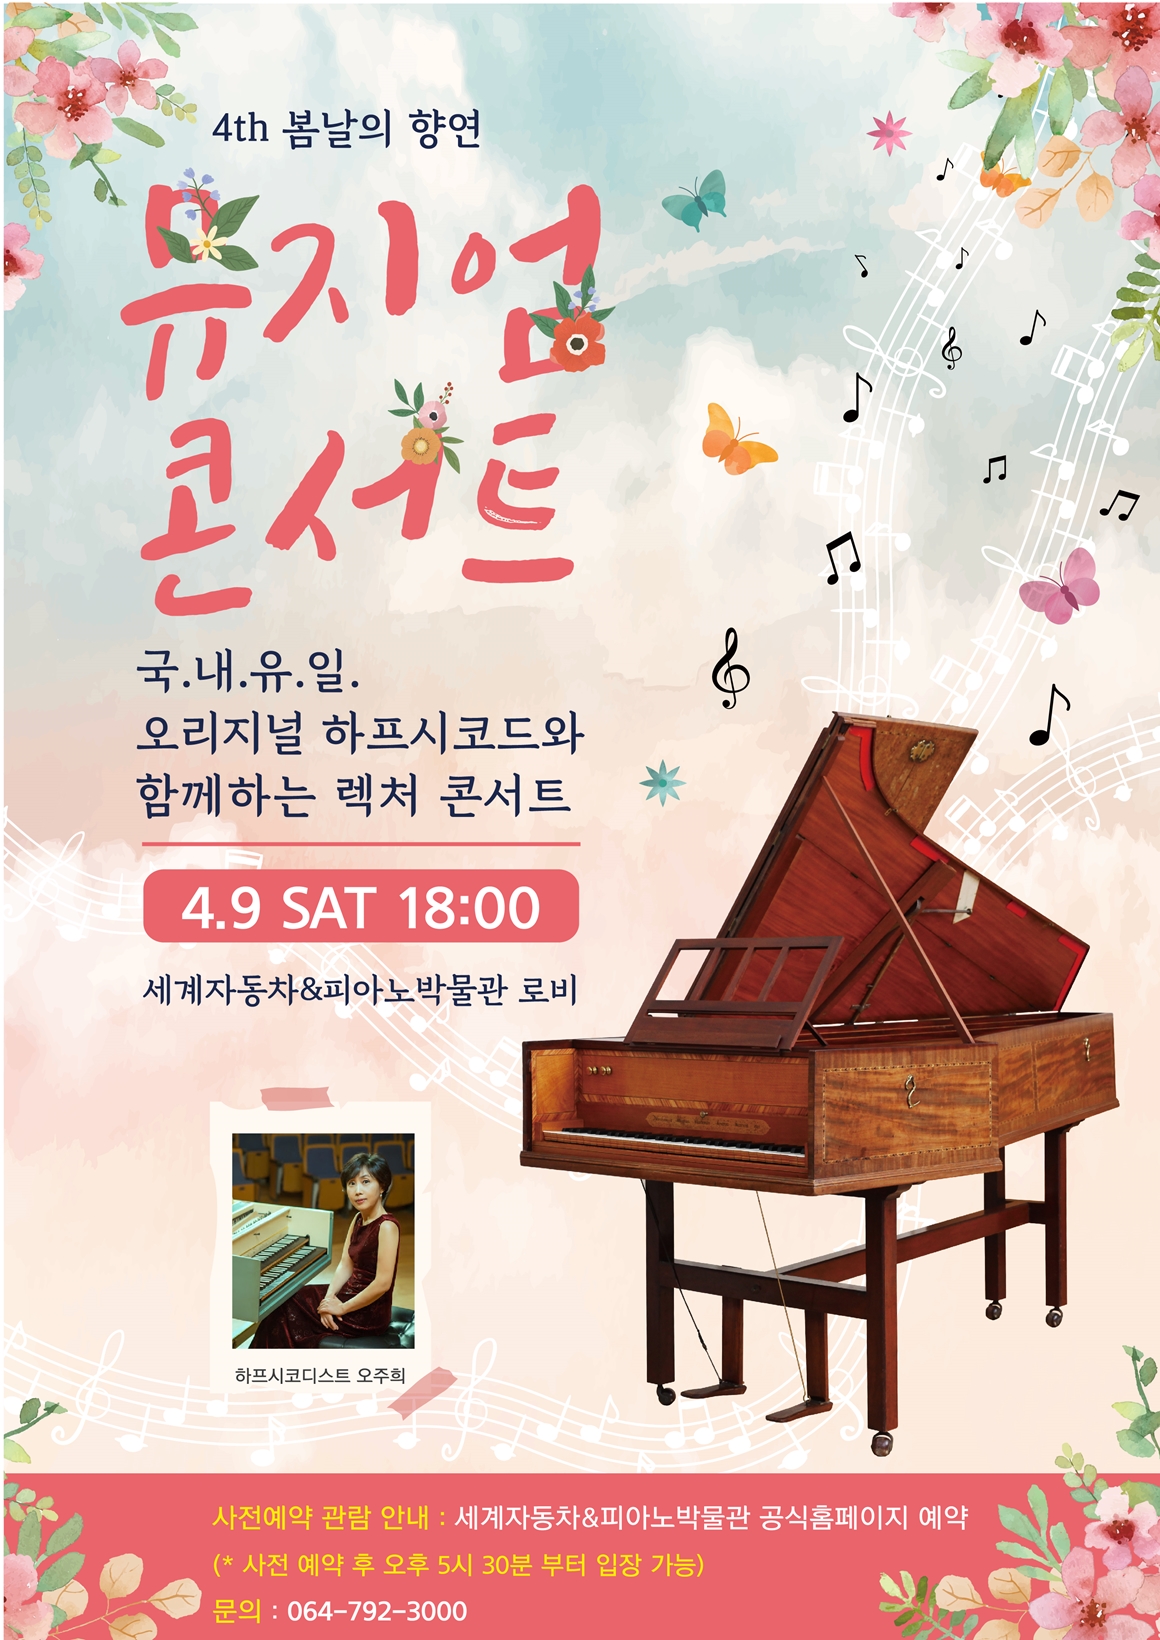 세계자동차&피아노박물관 4th 봄날의 향연 뮤지엄콘서트